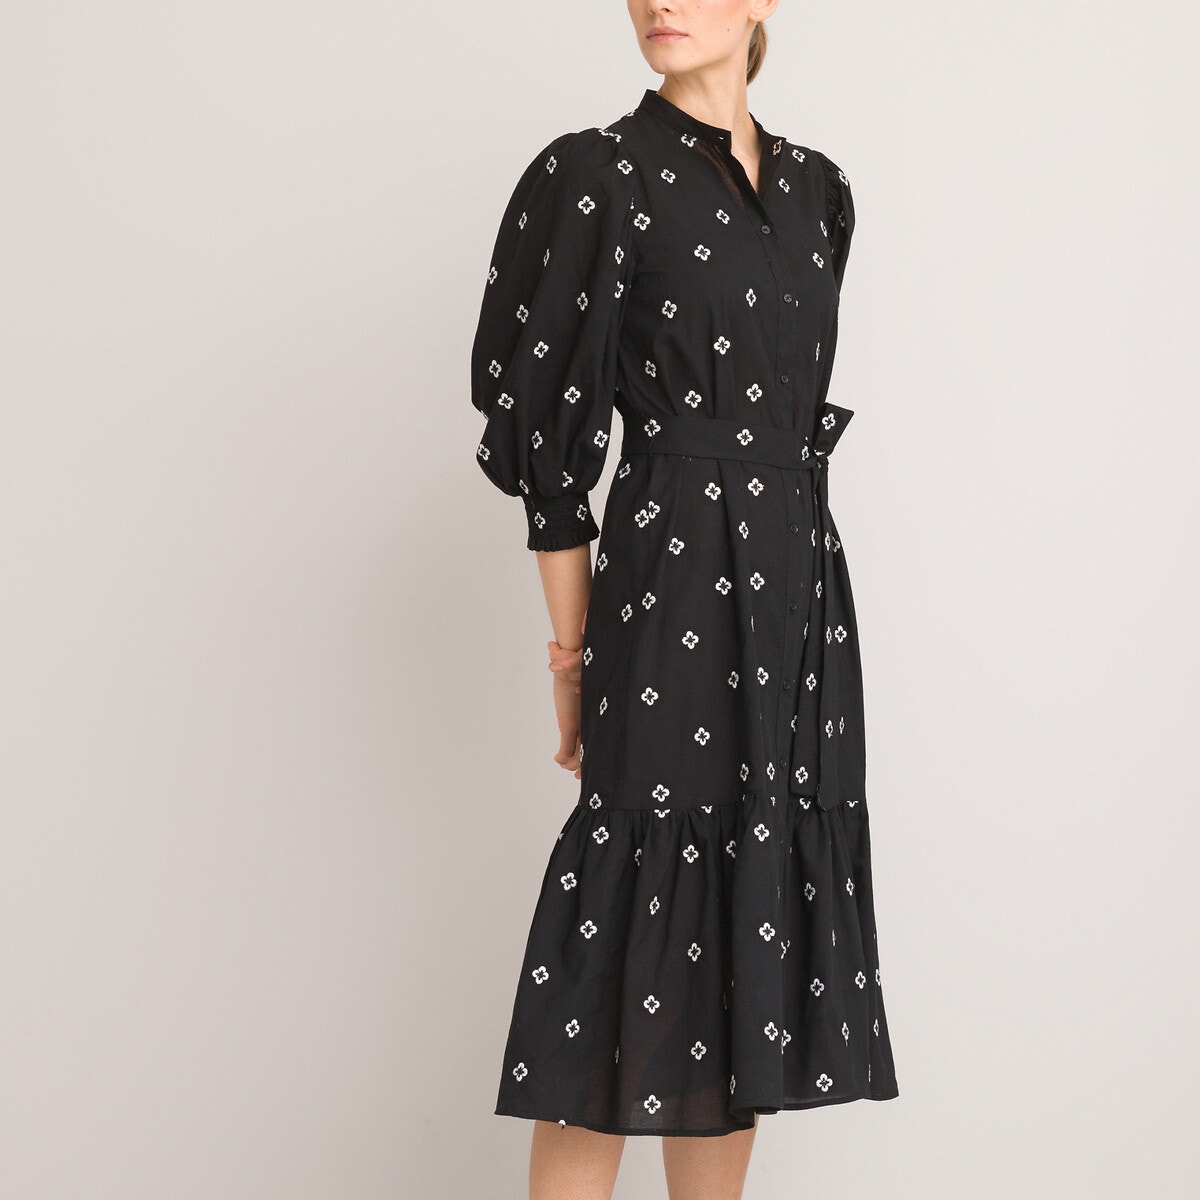 Μακρύ φόρεμα με μανίκια 3|4 και κεντημένα μοτίβα